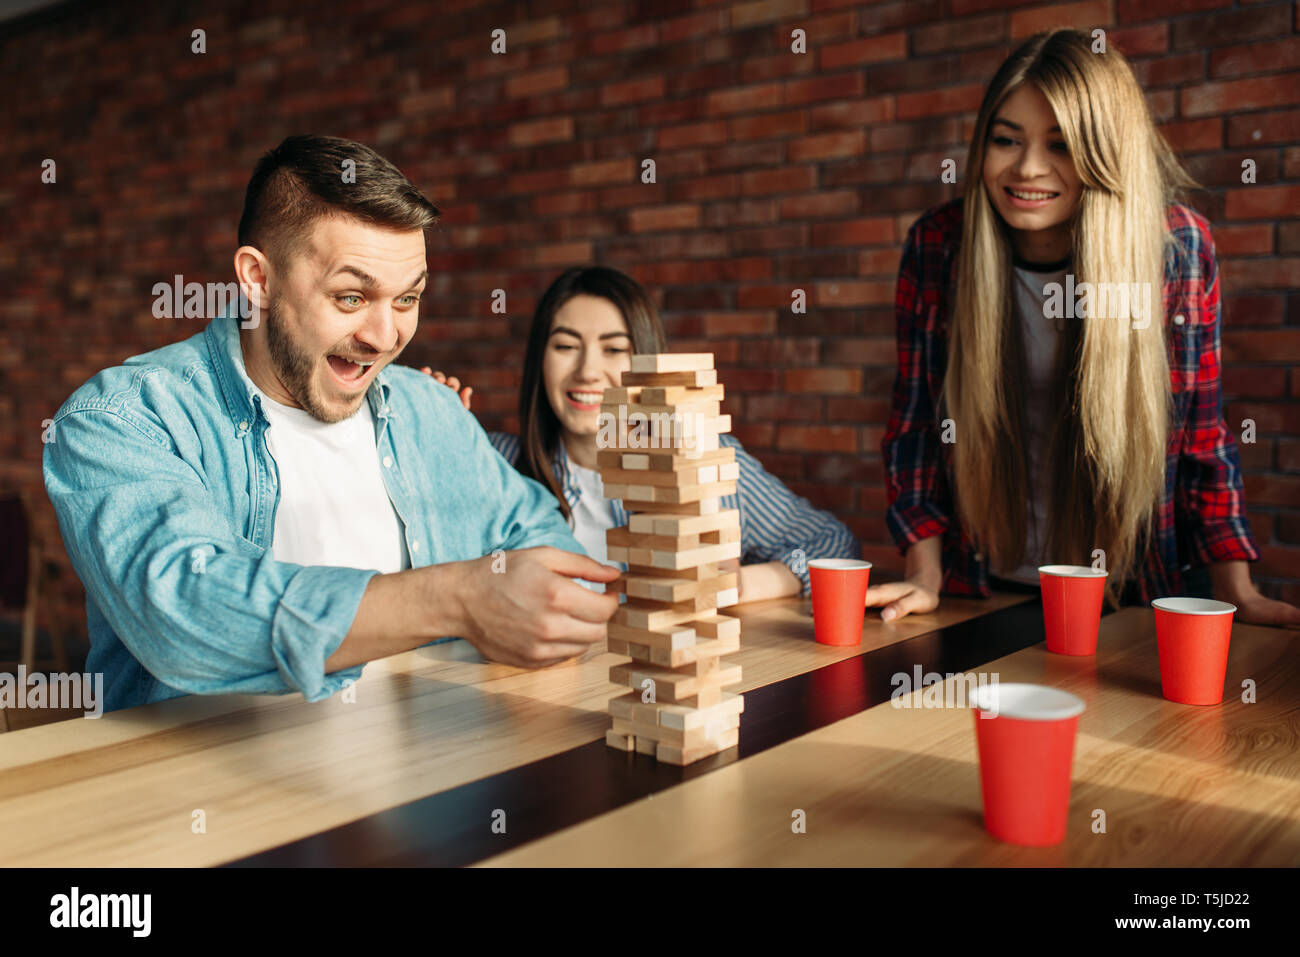 Lächelnd Freunde spielt Tabelle Spiel zu Hause, selektiver Fokus auf Turm. Brettspiel mit Holzklötzen, die hohe Konzentration, Unterhaltung für funn Stockfoto